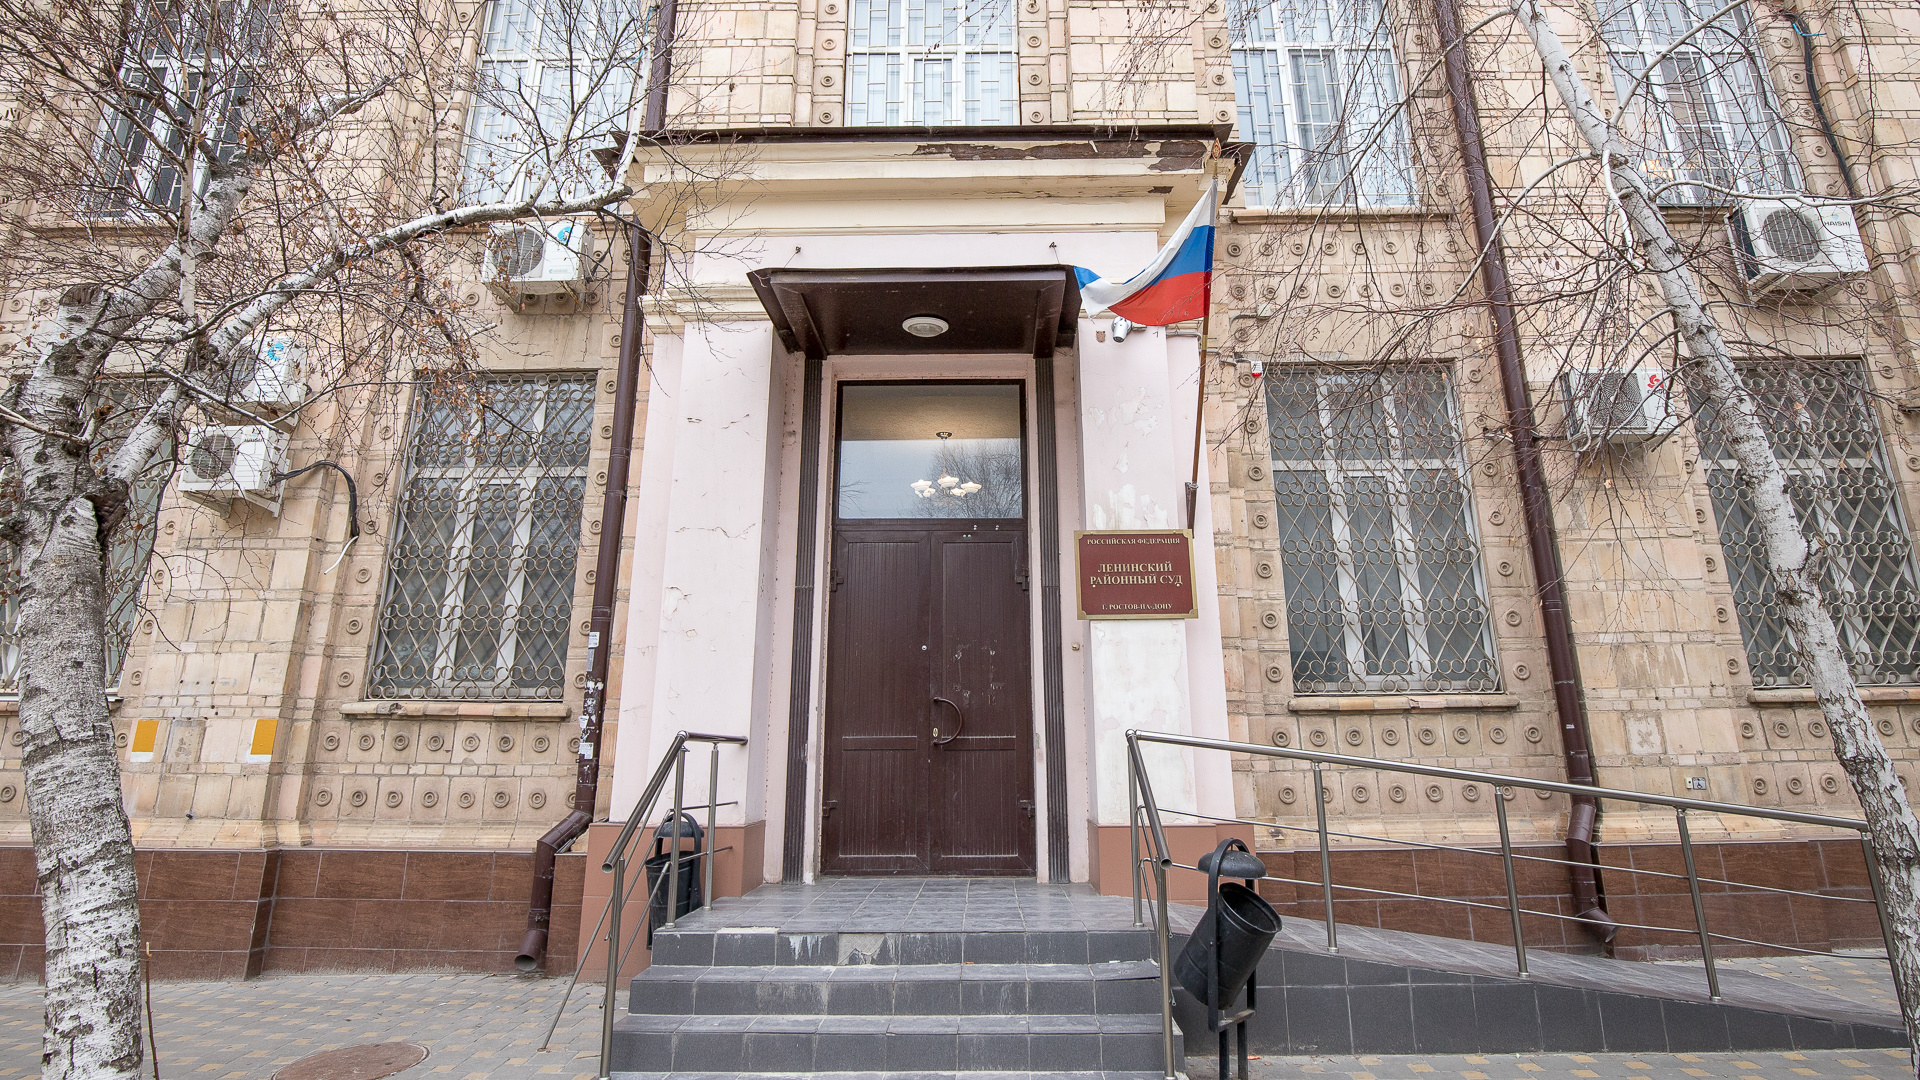 Сайт ленинского суда крым